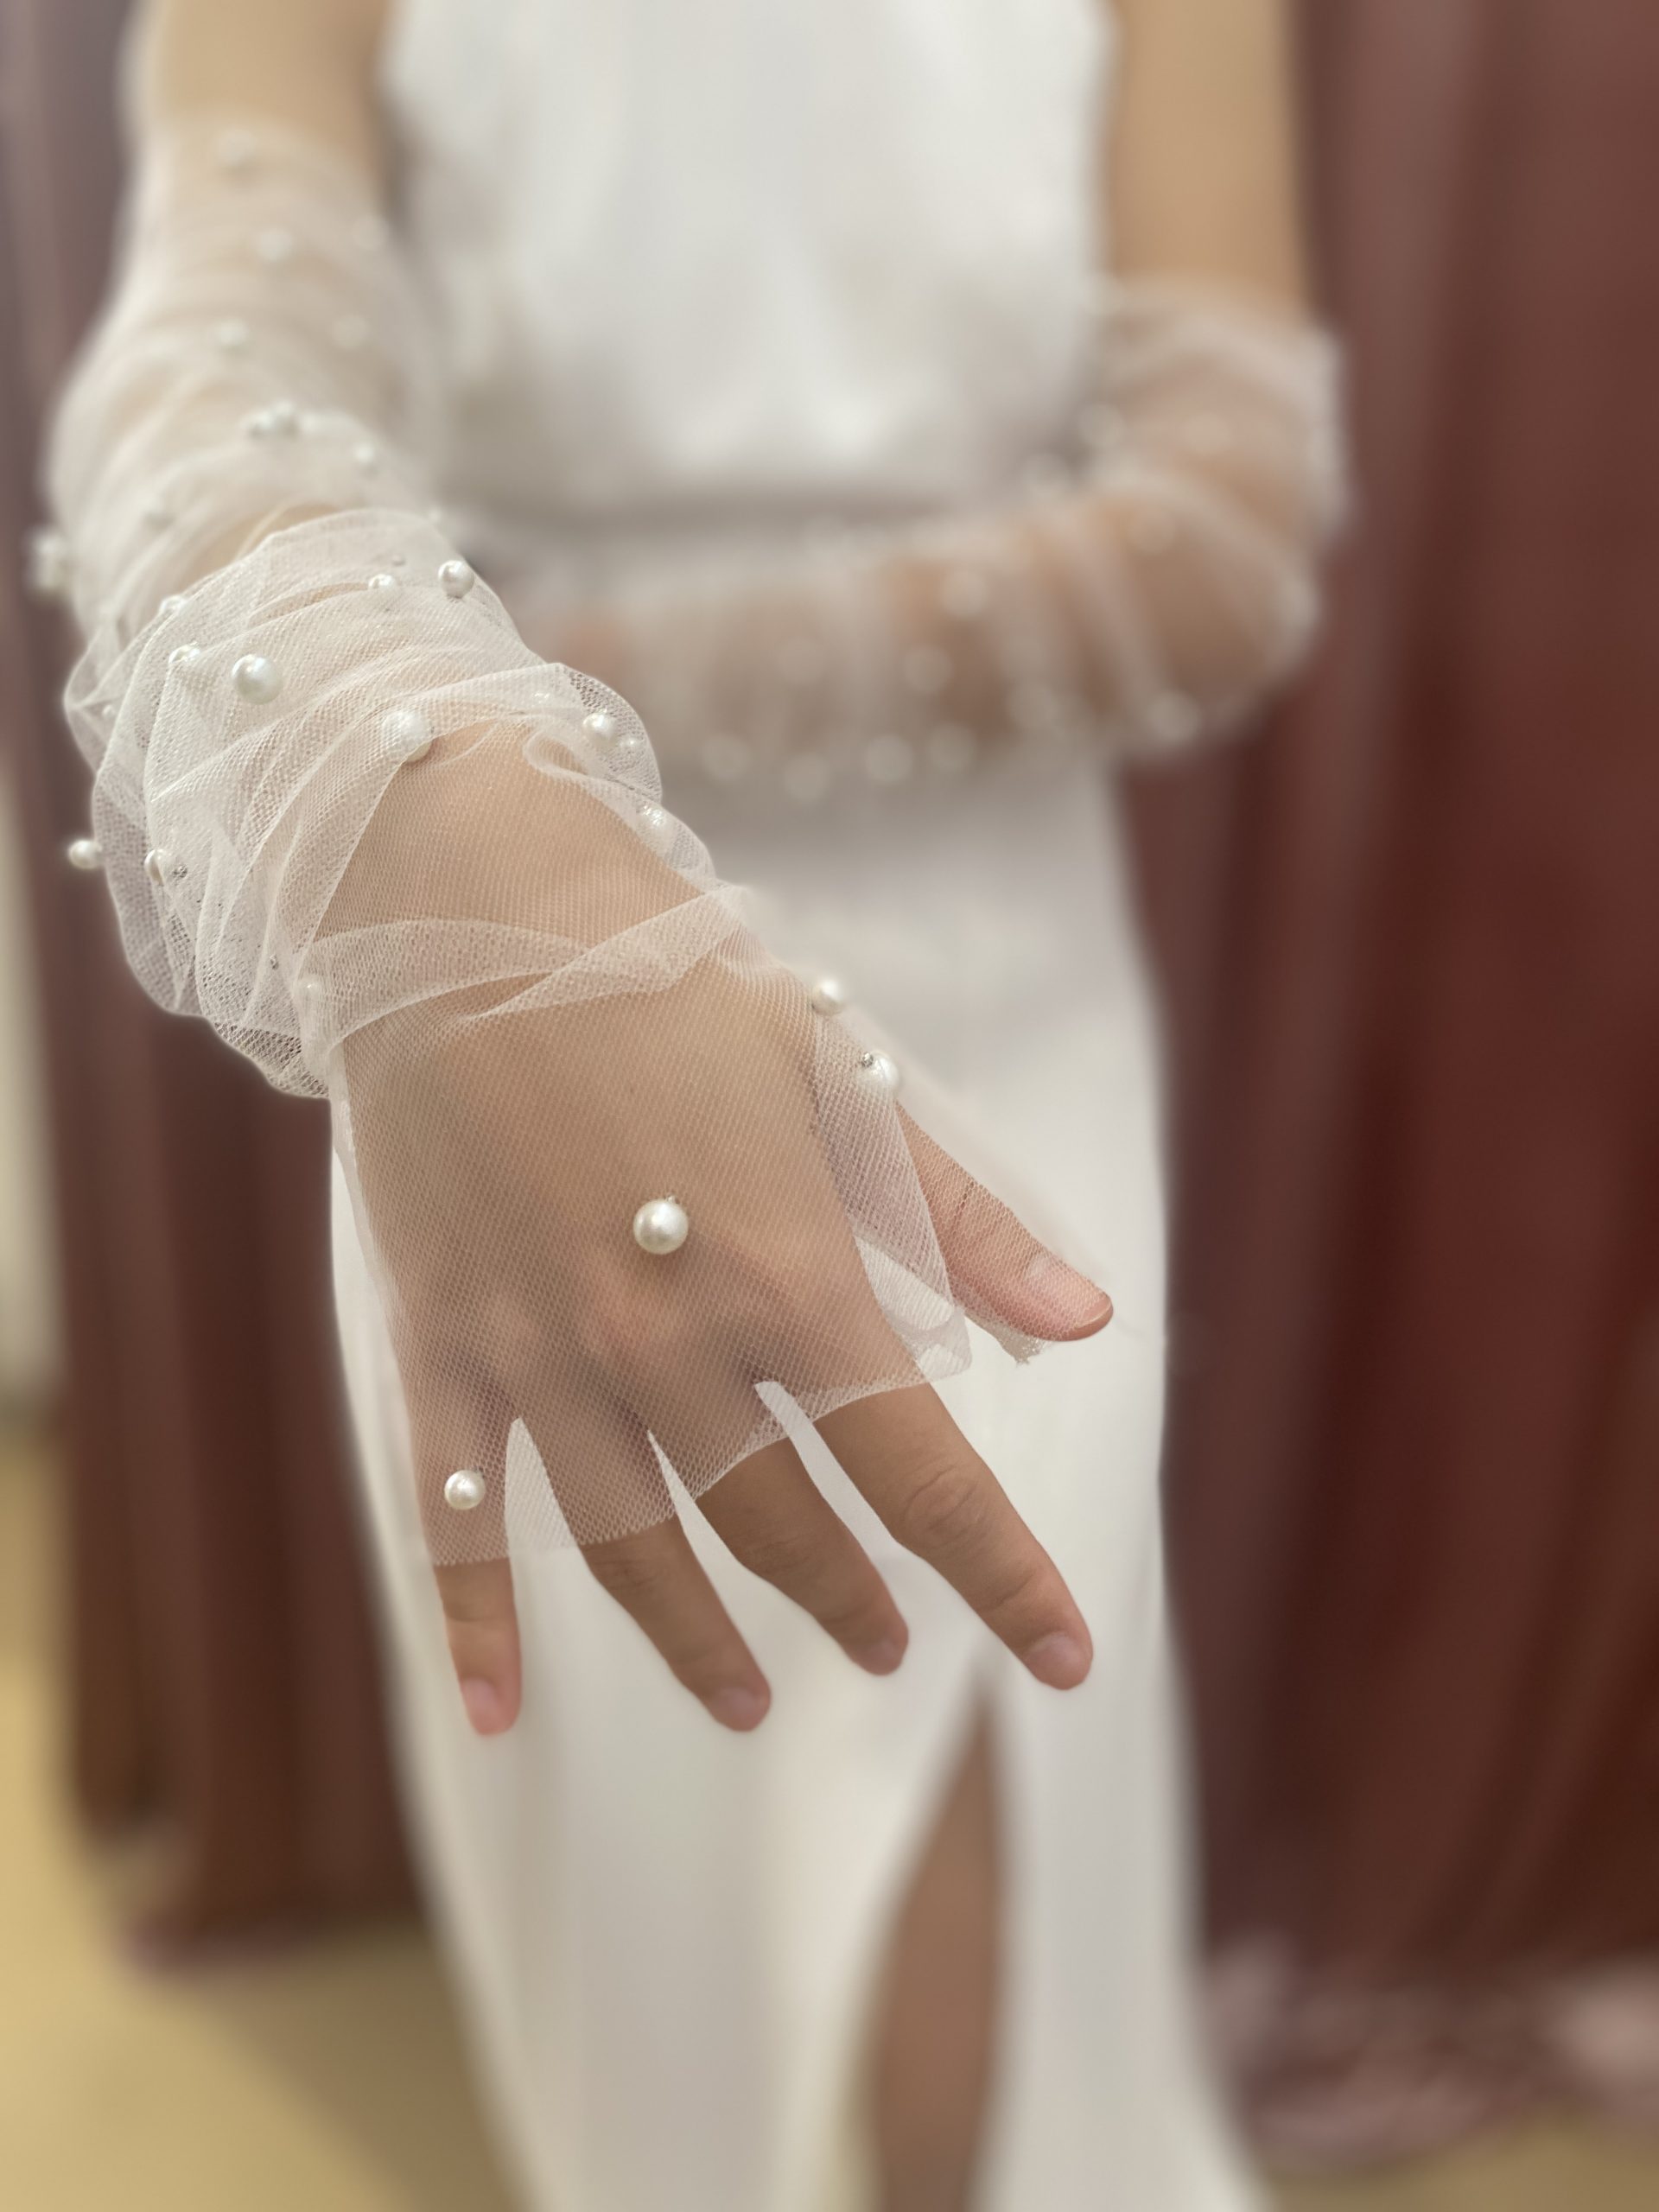 Ein Model zeigt seine Hand, die in einem Handschuh zum Brautkleid steckt.